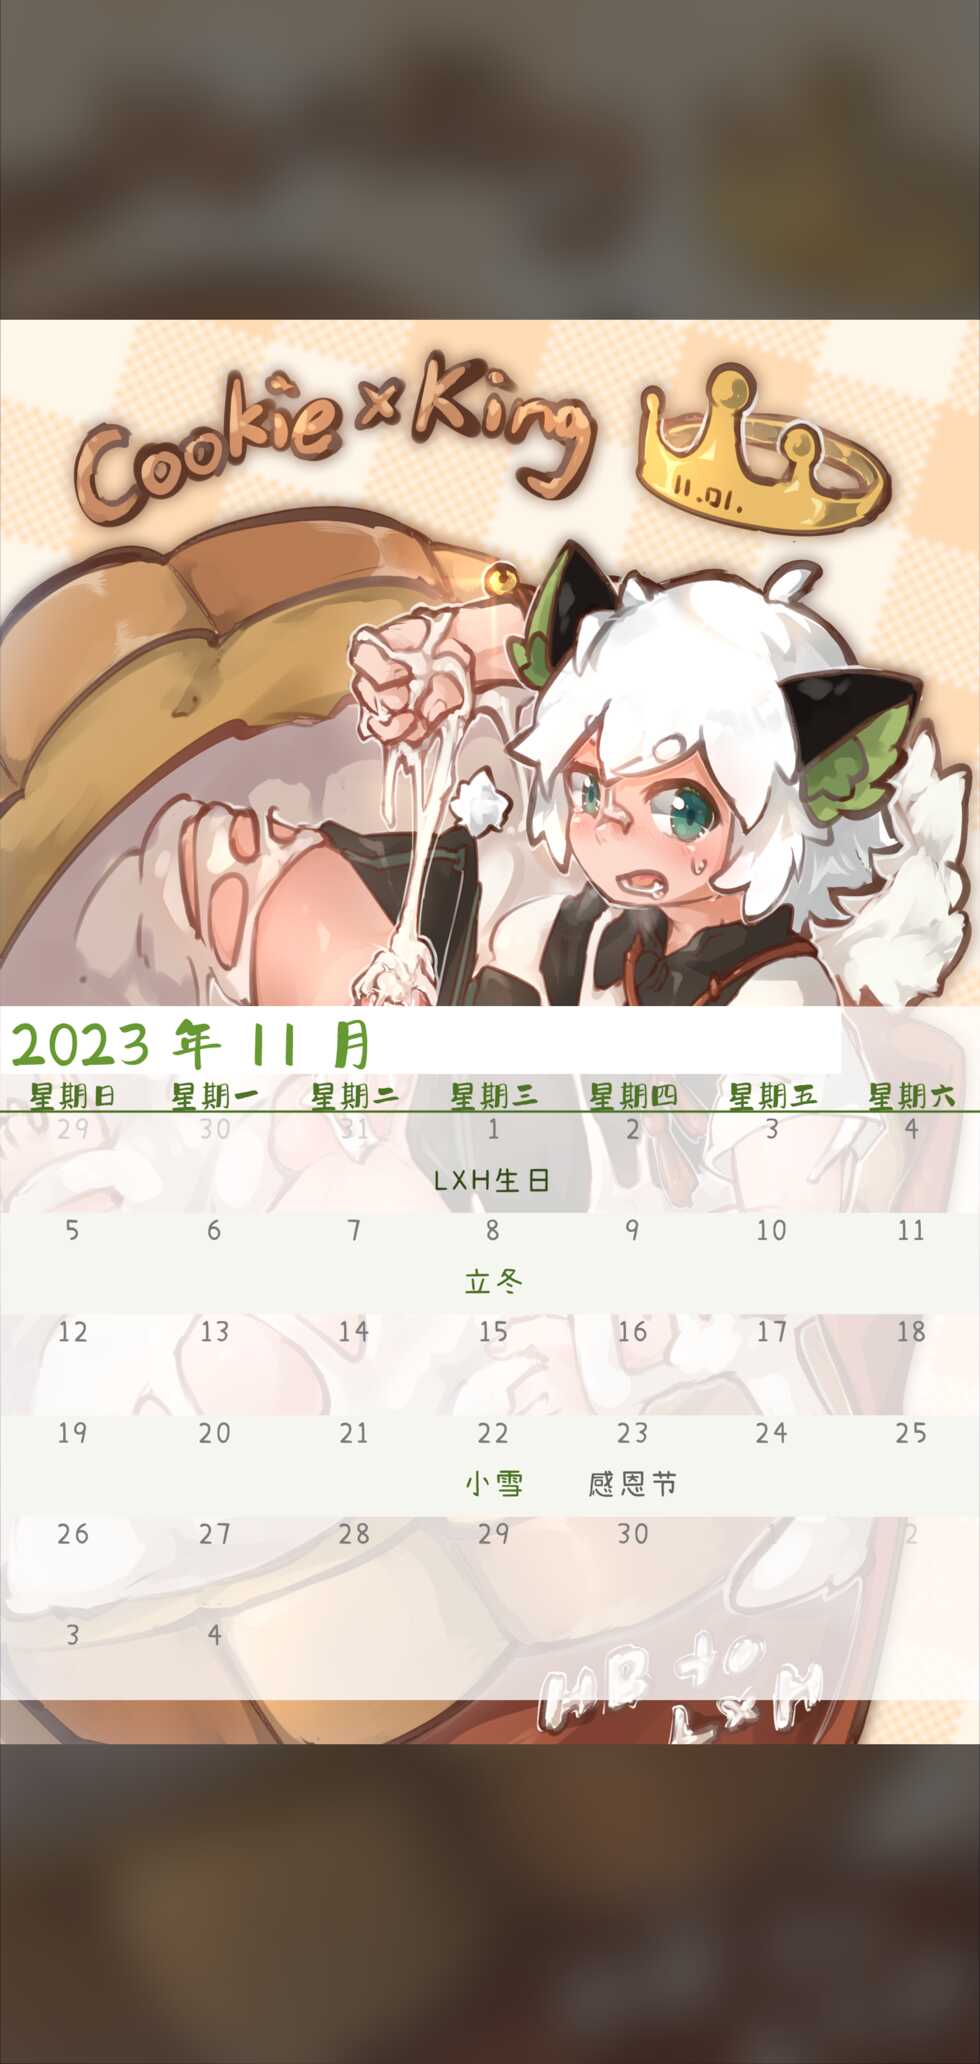 [Suka Genmei] Luo Xiaohei Calendar - Page 14